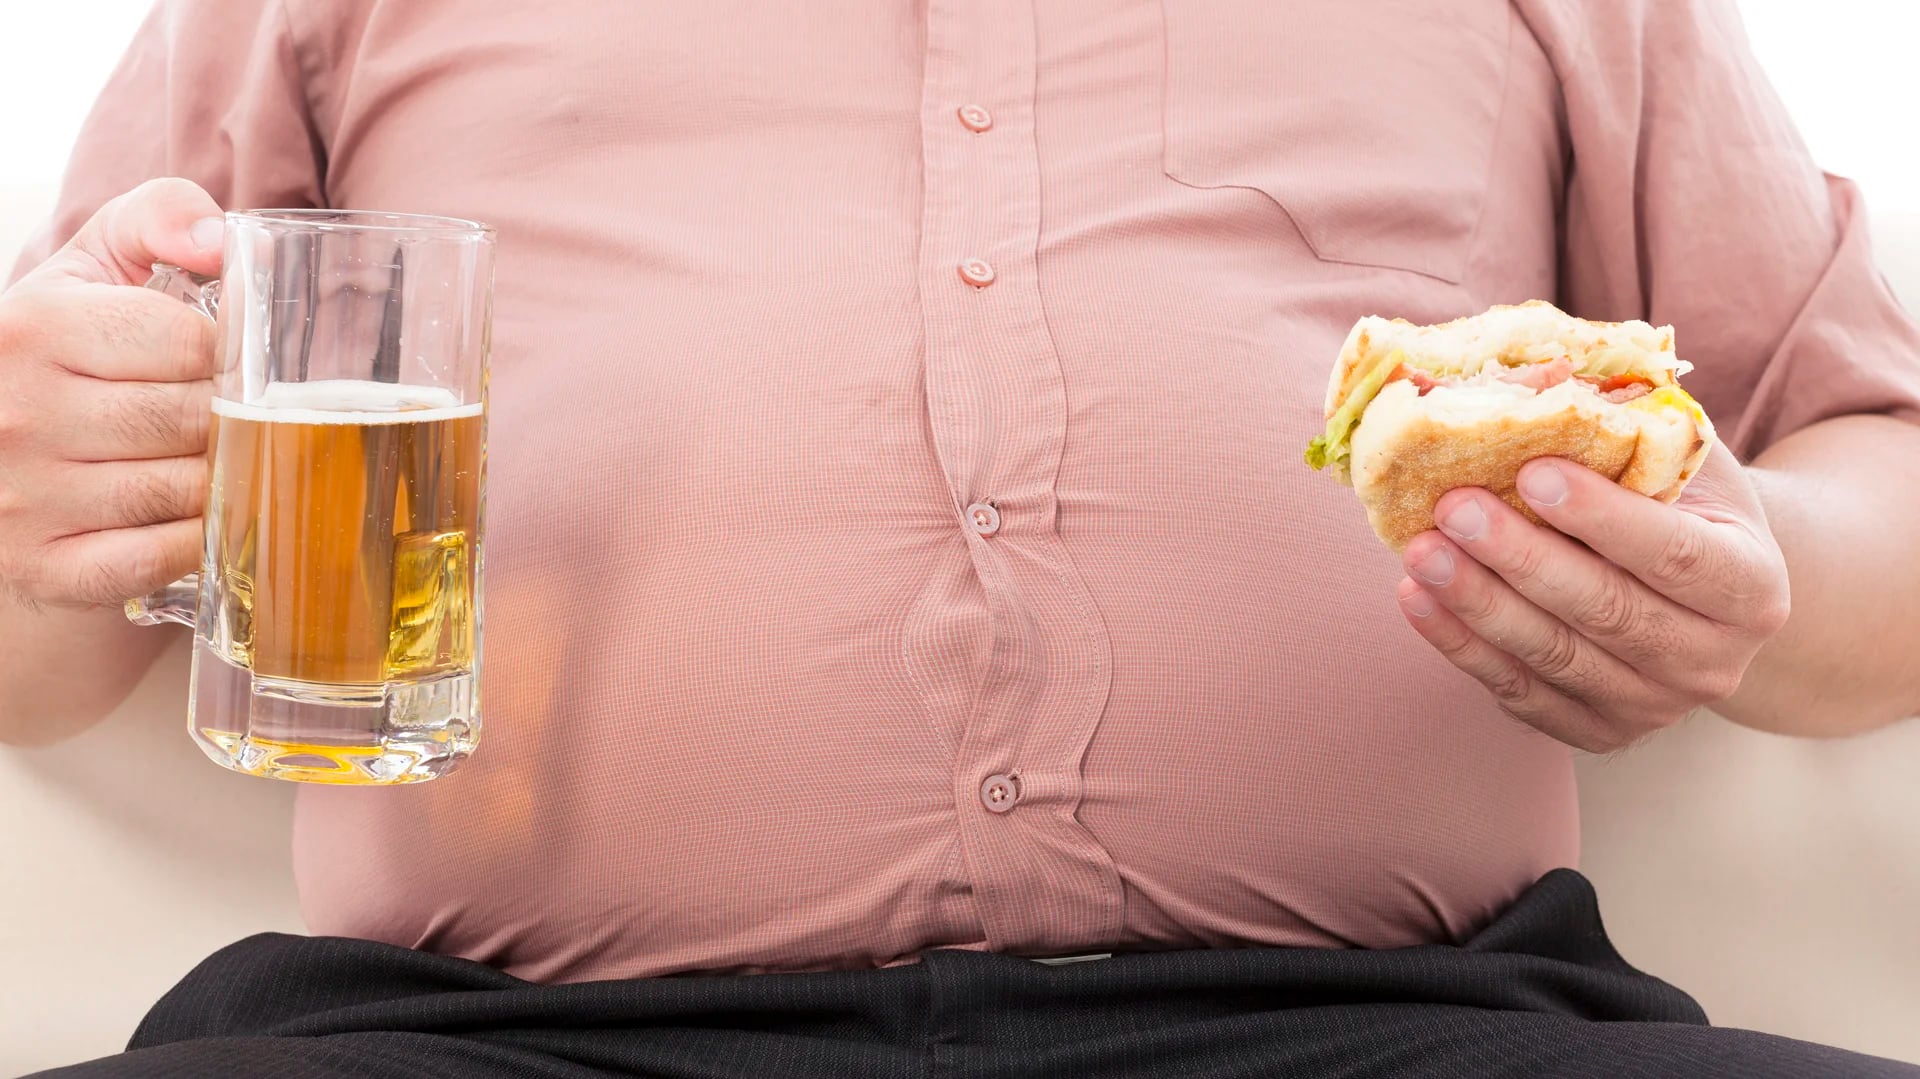 La mala alimentación contribuye a generar obesidad (iStock)